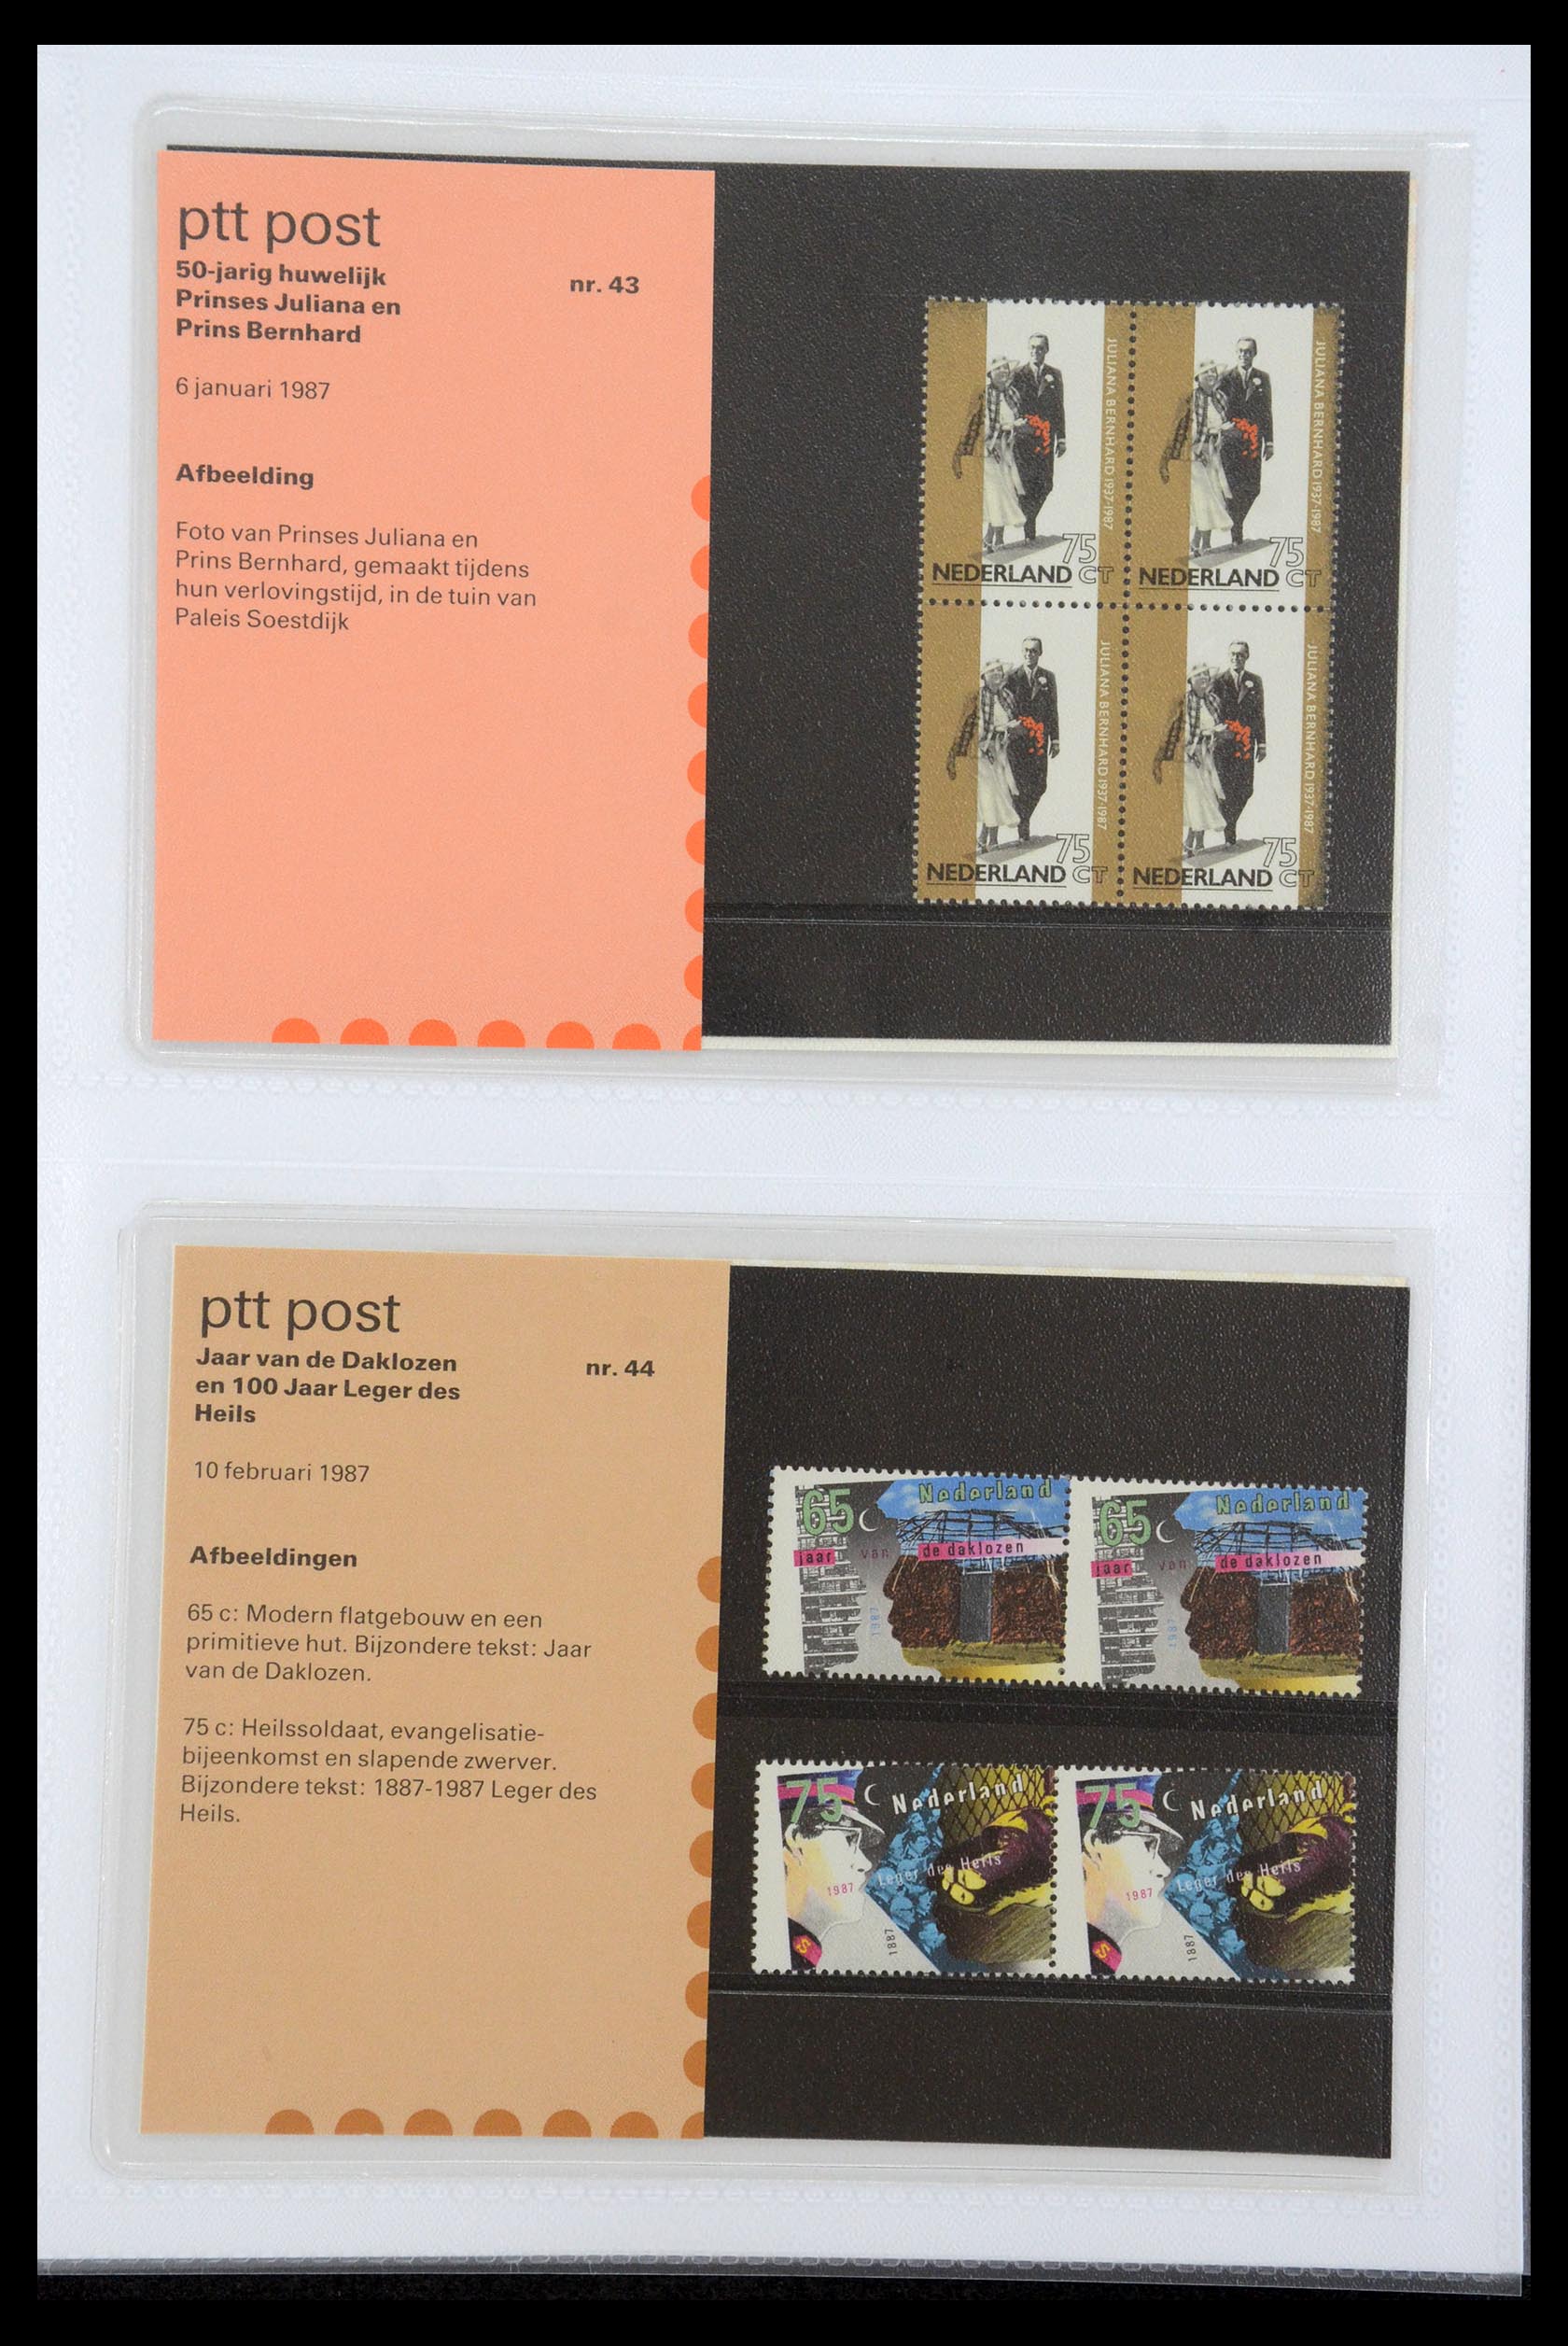 35947 022 - Stamp Collection 35947 Netherlands PTT presentation packs 1982-2019!